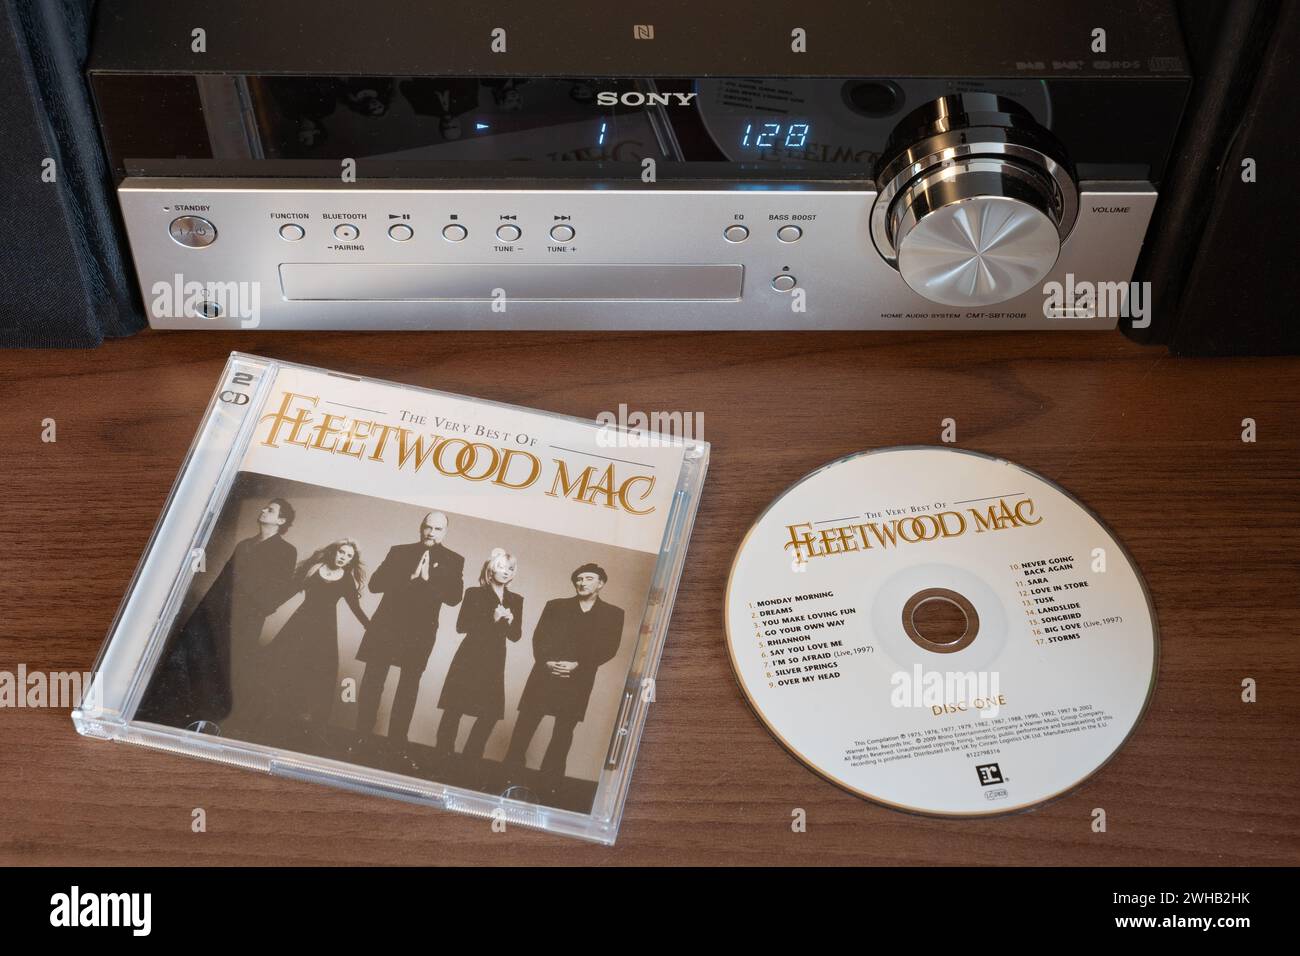 Doppio CD di The Very Best of Fleetwood Mac che mostra i membri della band - una rock band britannica formata nel 1967. Davanti a un lettore CD Sony. REGNO UNITO Foto Stock